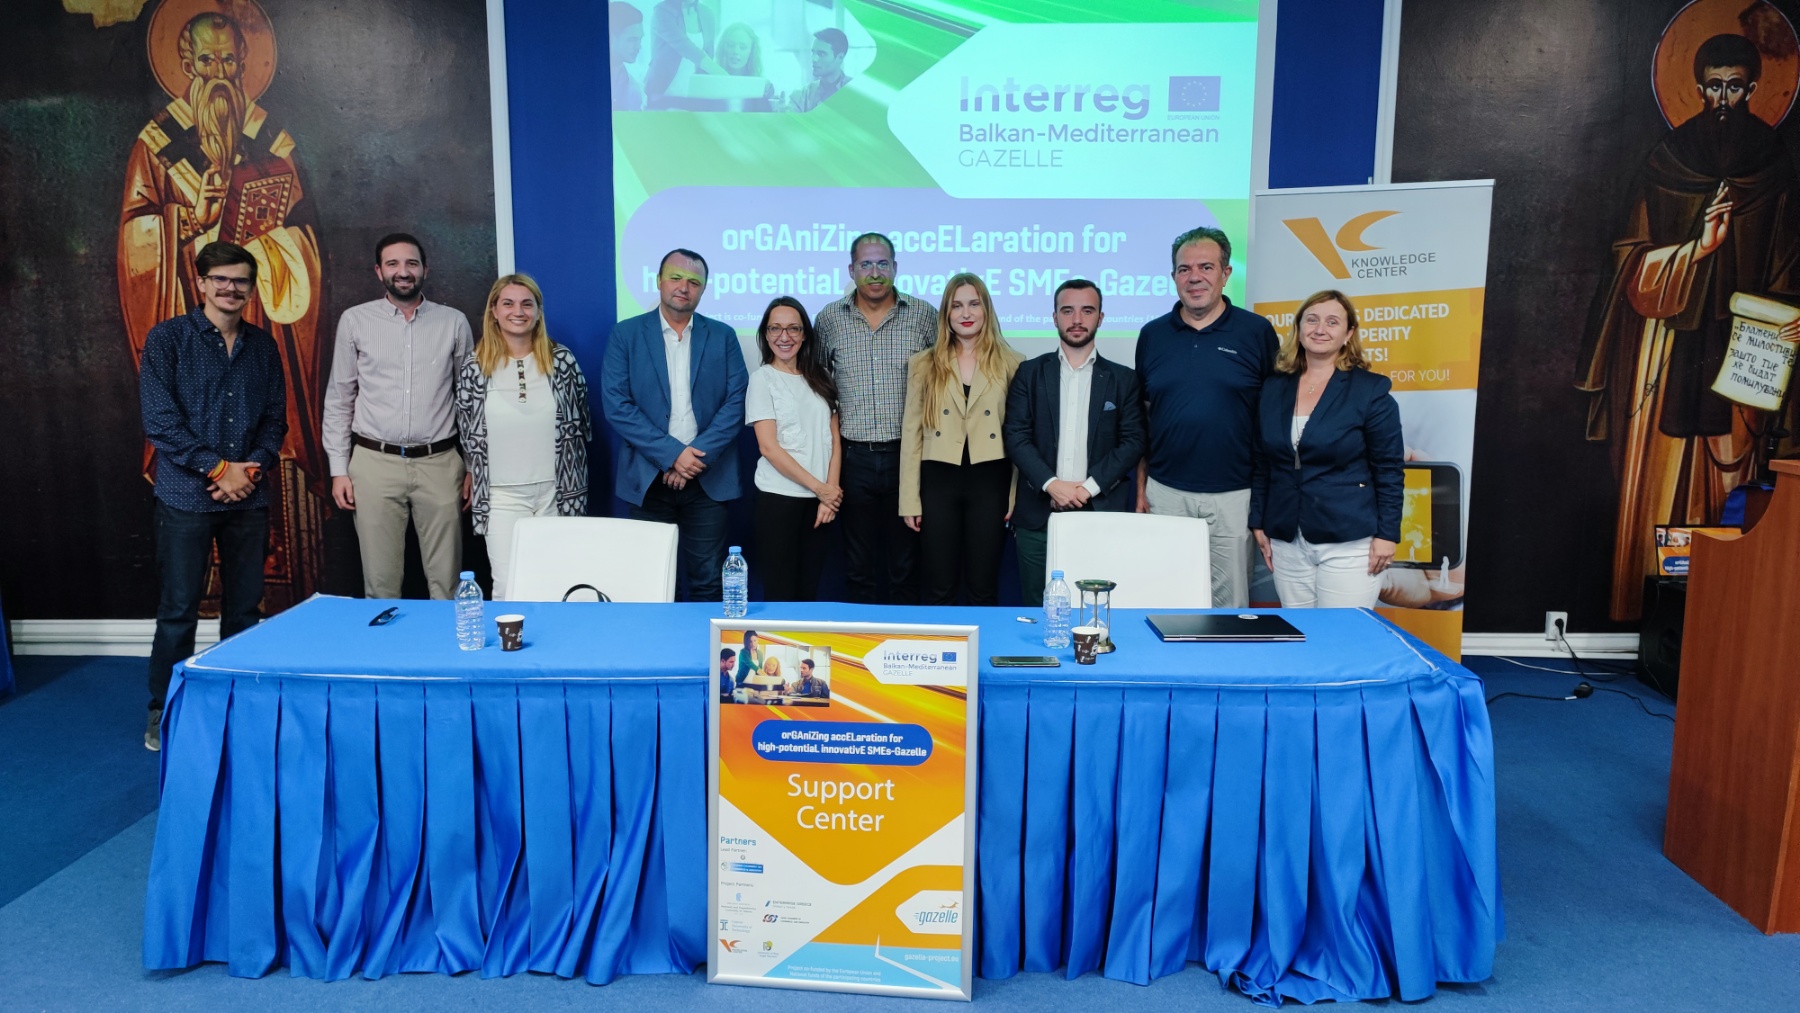  Проектот „Газели“ и иновациите во Северна Македонија и балканскиот регион 